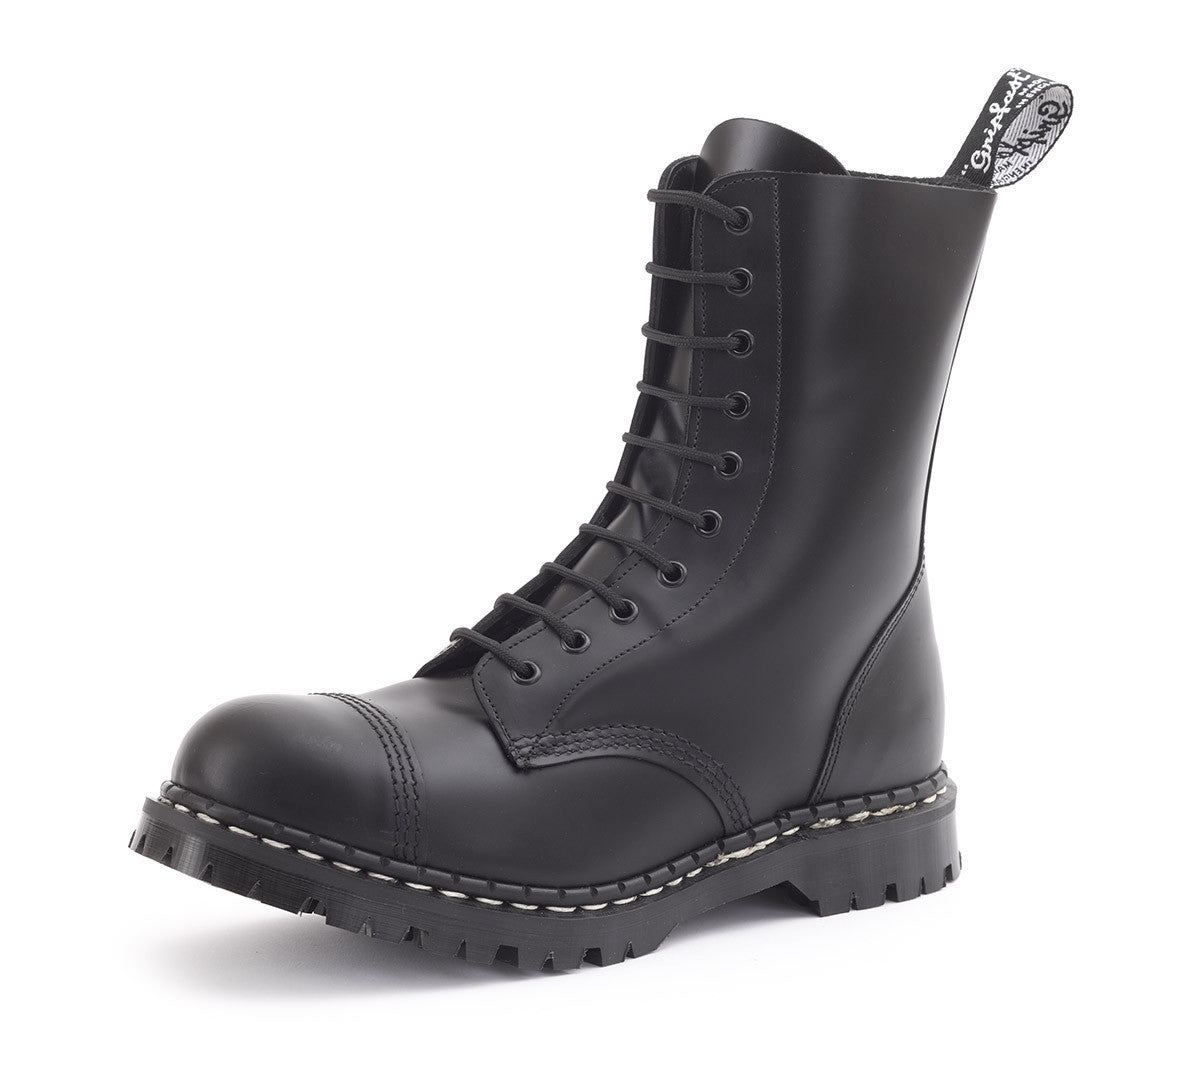 comfortable waterproof boots